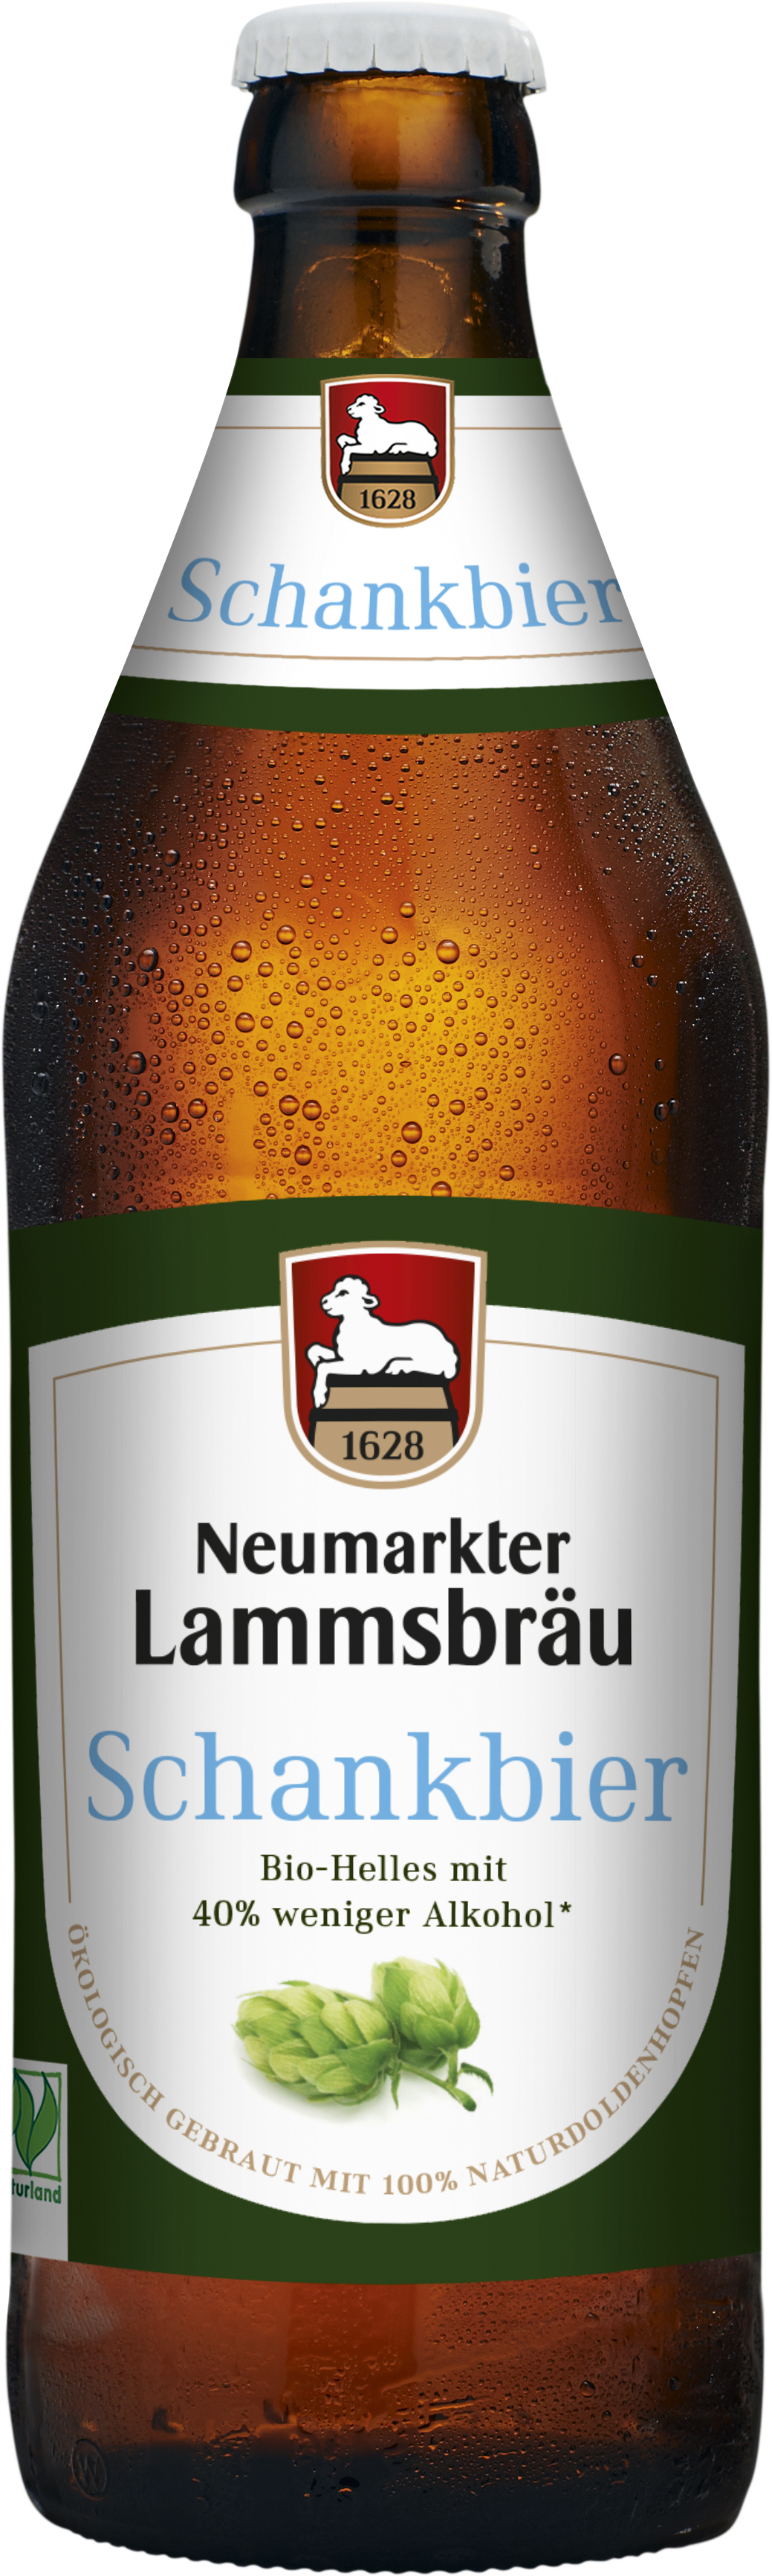 Neumarkter Lammsbräu Bio Schankbier 10 x 0,5 l (Glas)